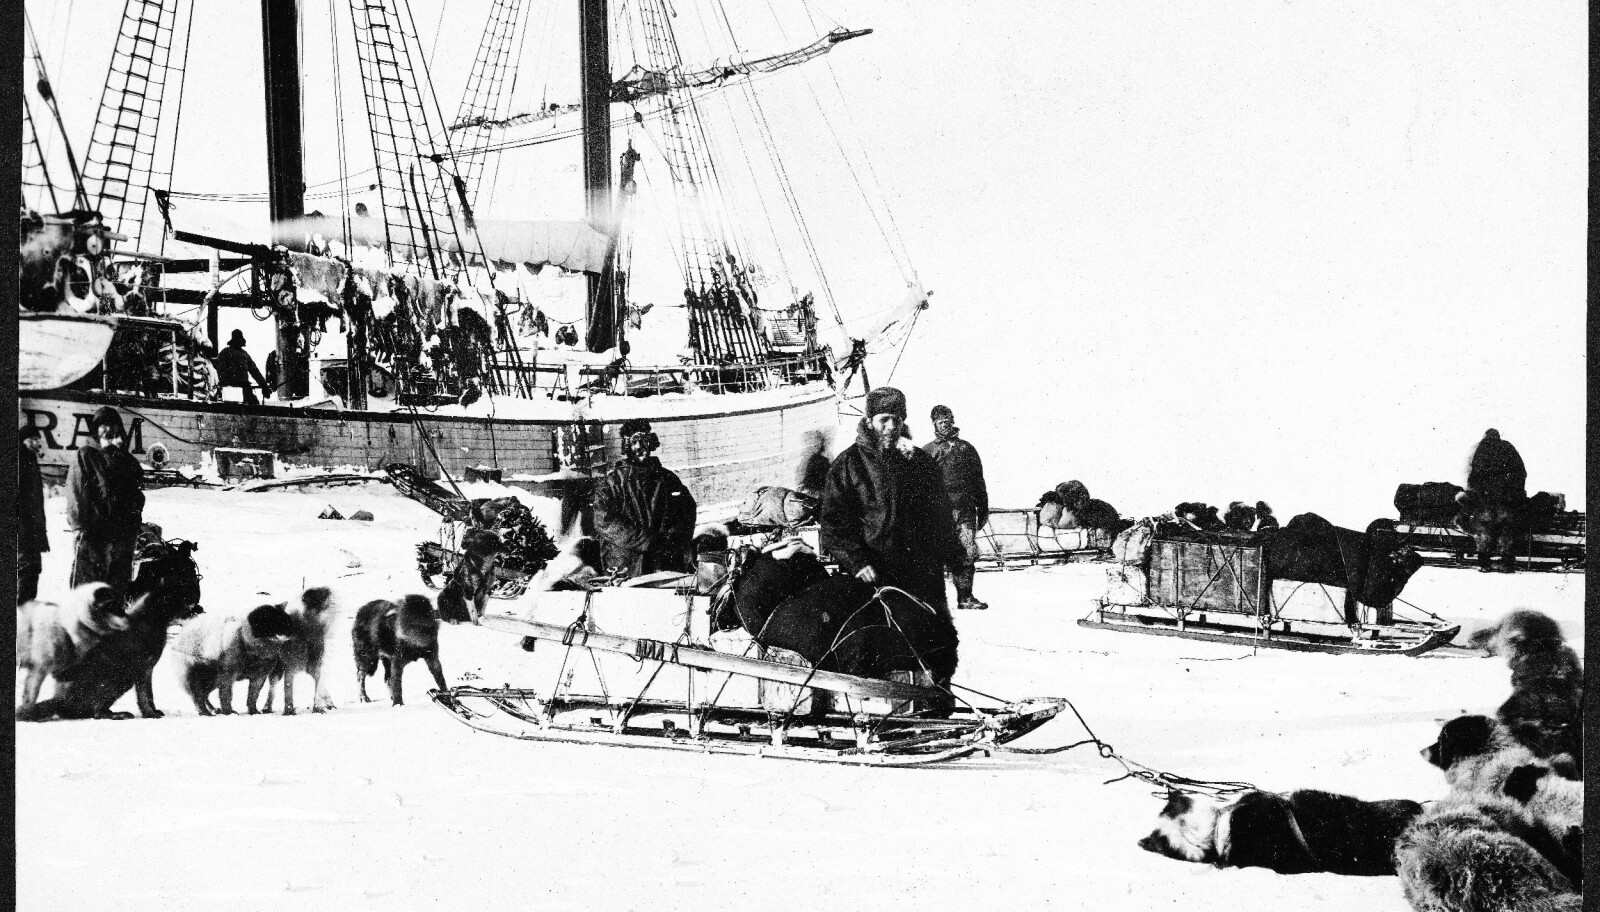 <b>UTVIKLET:</b> På Fram utviklet Sverdrup en metode med lettere karavaner av hunder og sleder. De var raske og enkle å håndtere. Amundsen videreutviklet dem til sin ferd mot Sydpolen ti år senere.